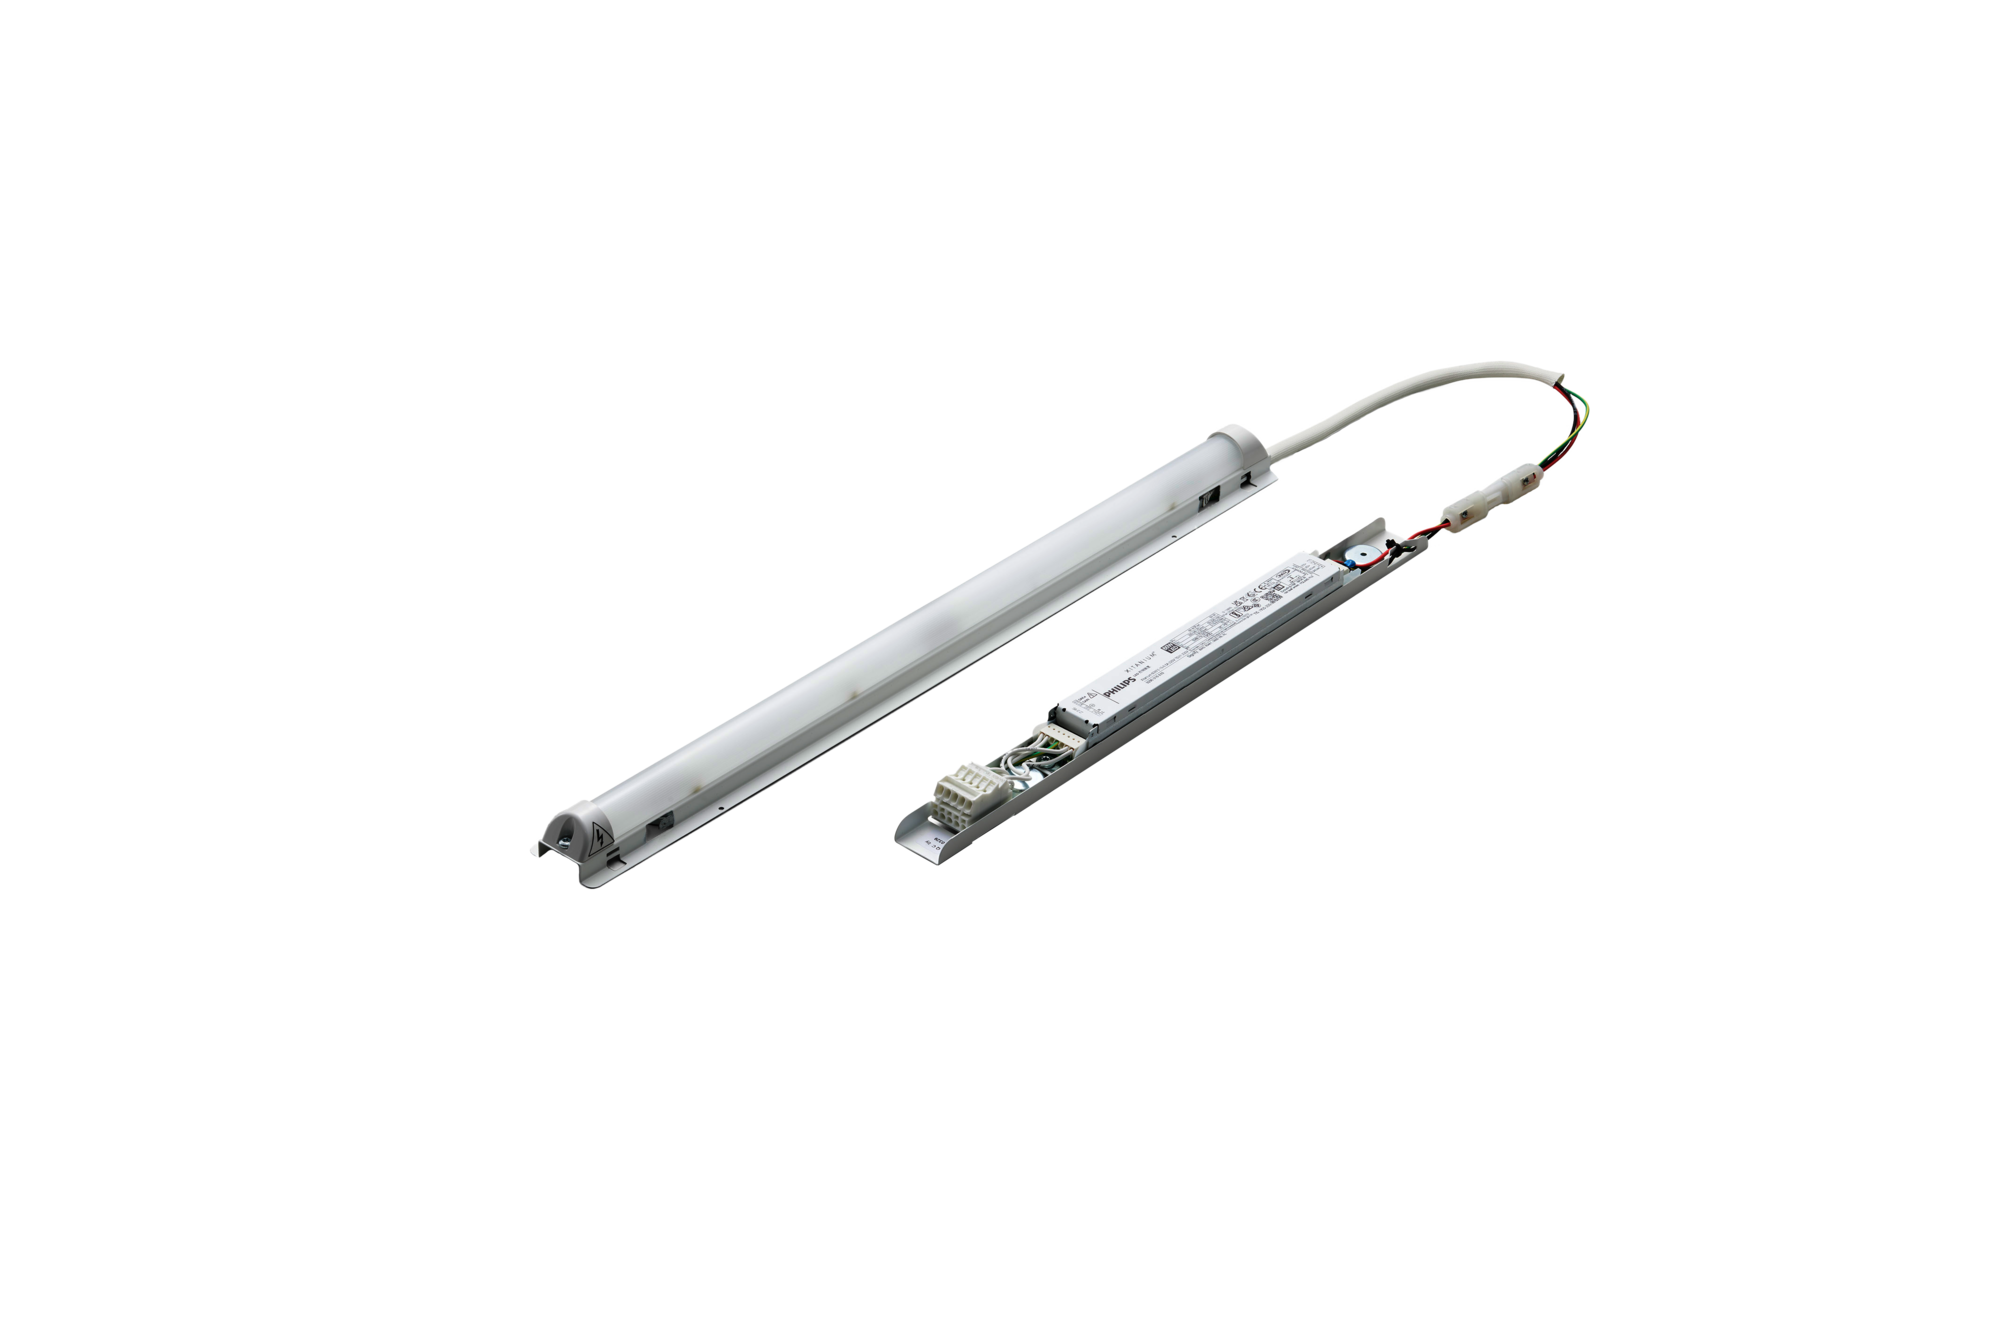 LED Scheinwerferset LEDH7 V3.0 AIOX5, weiss, LED Umrüstsets für  Reflektorscheinwerfer All in One, LED Abblendlicht Fernlicht